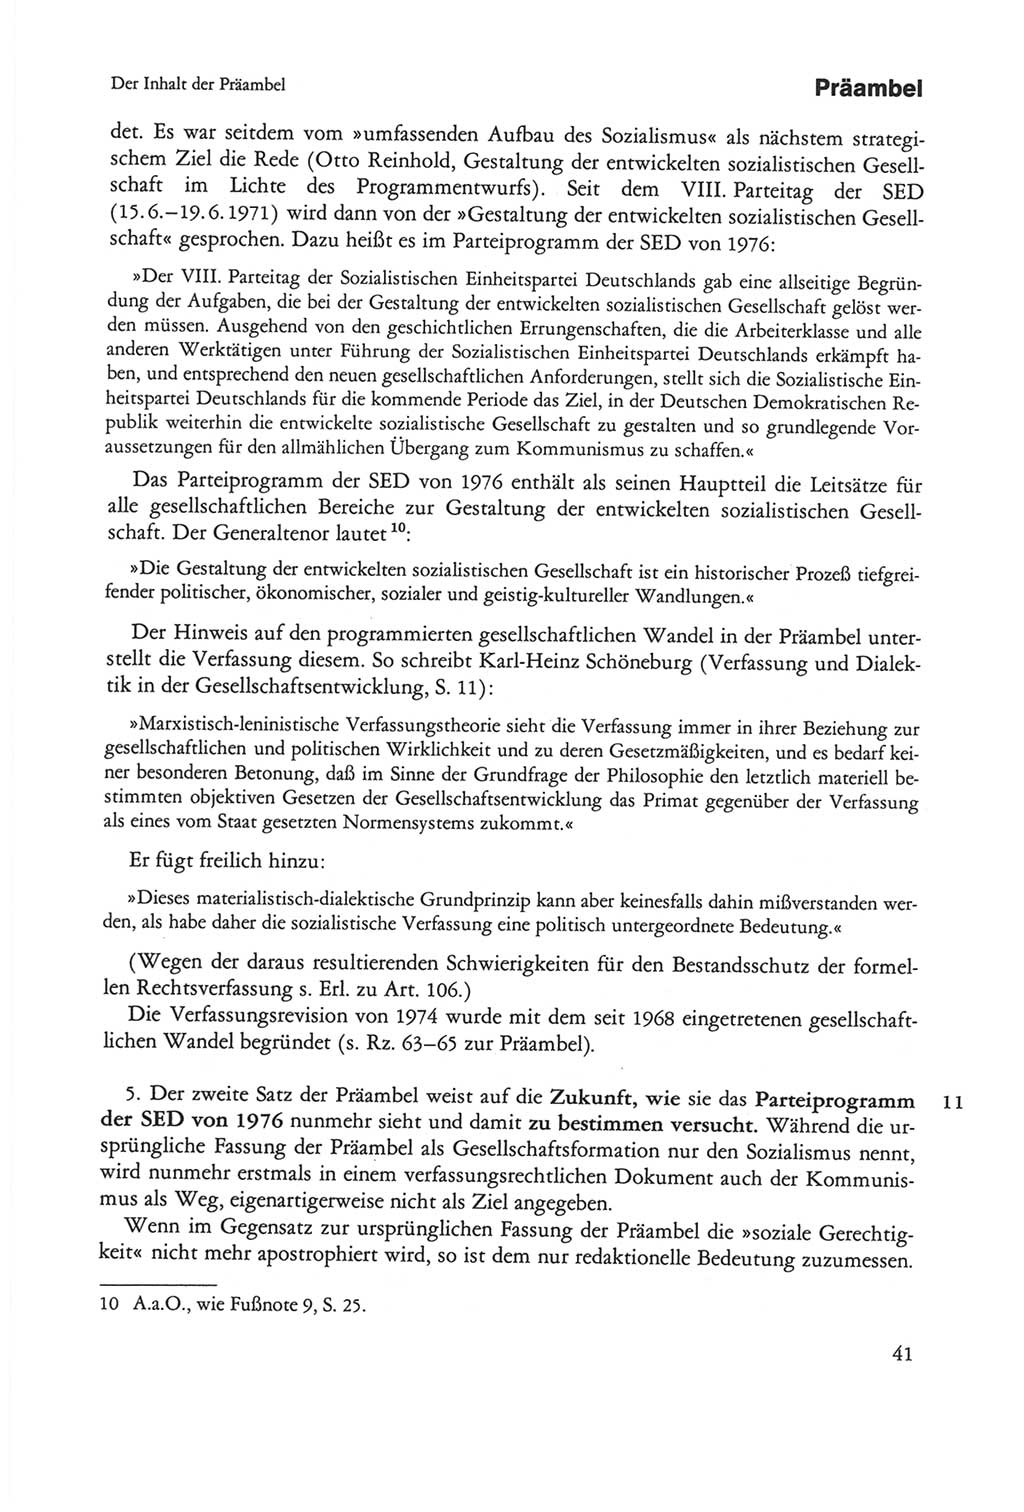 Die sozialistische Verfassung der Deutschen Demokratischen Republik (DDR), Kommentar 1982, Seite 41 (Soz. Verf. DDR Komm. 1982, S. 41)